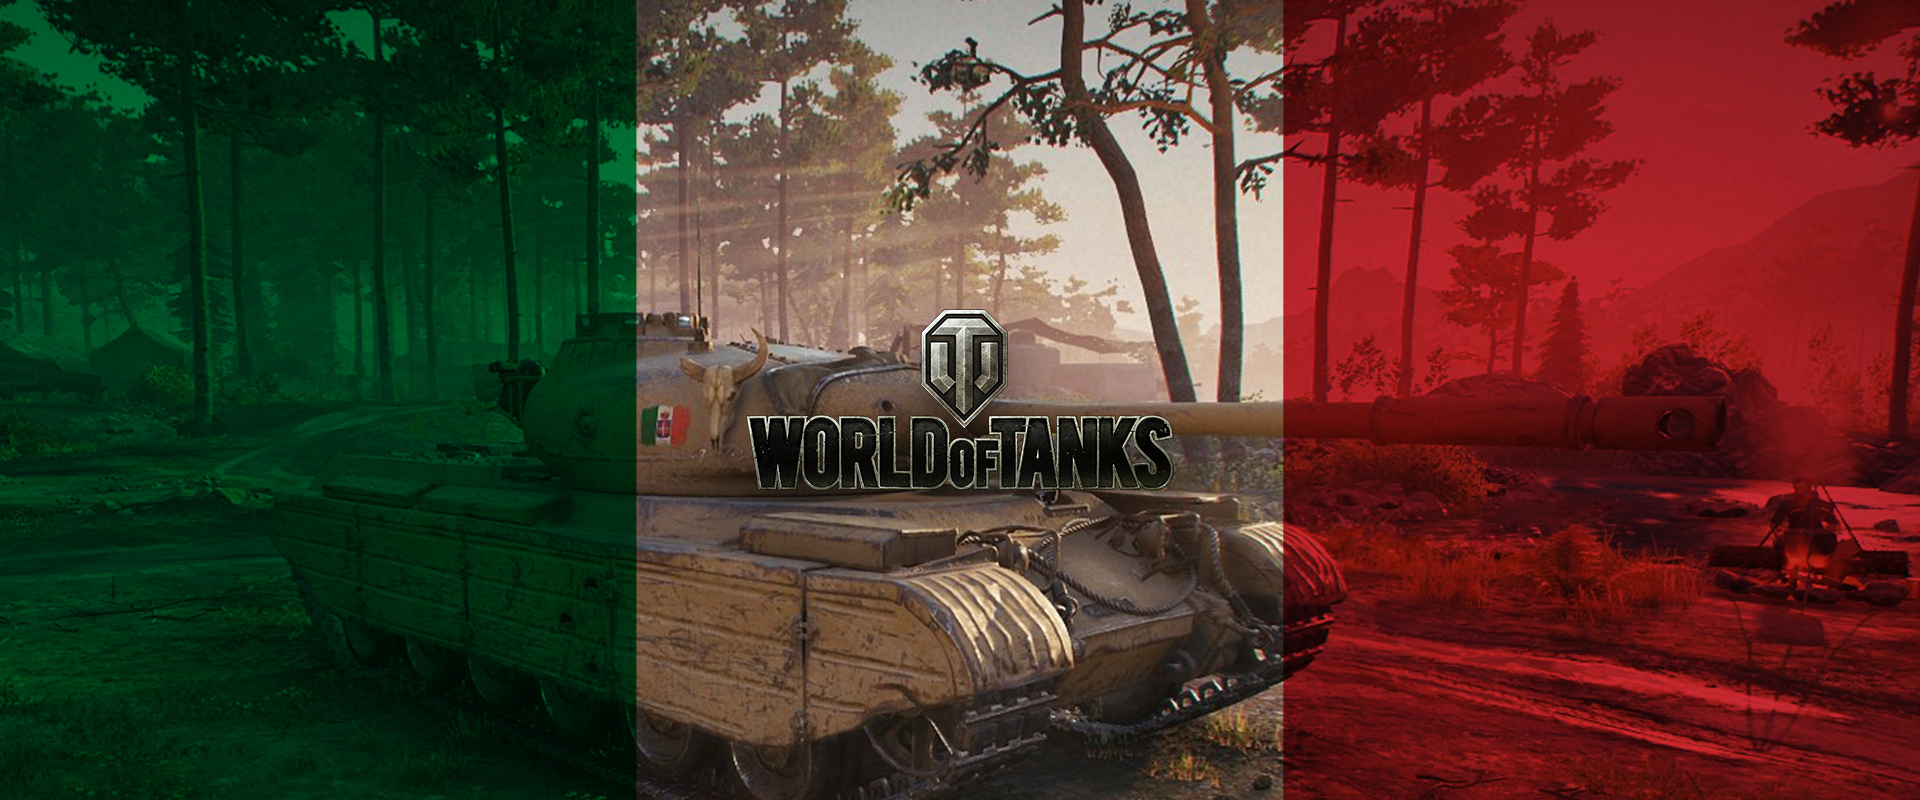 Hogyan használhatjuk a leghatékonyabban az olasz tankjainkat?